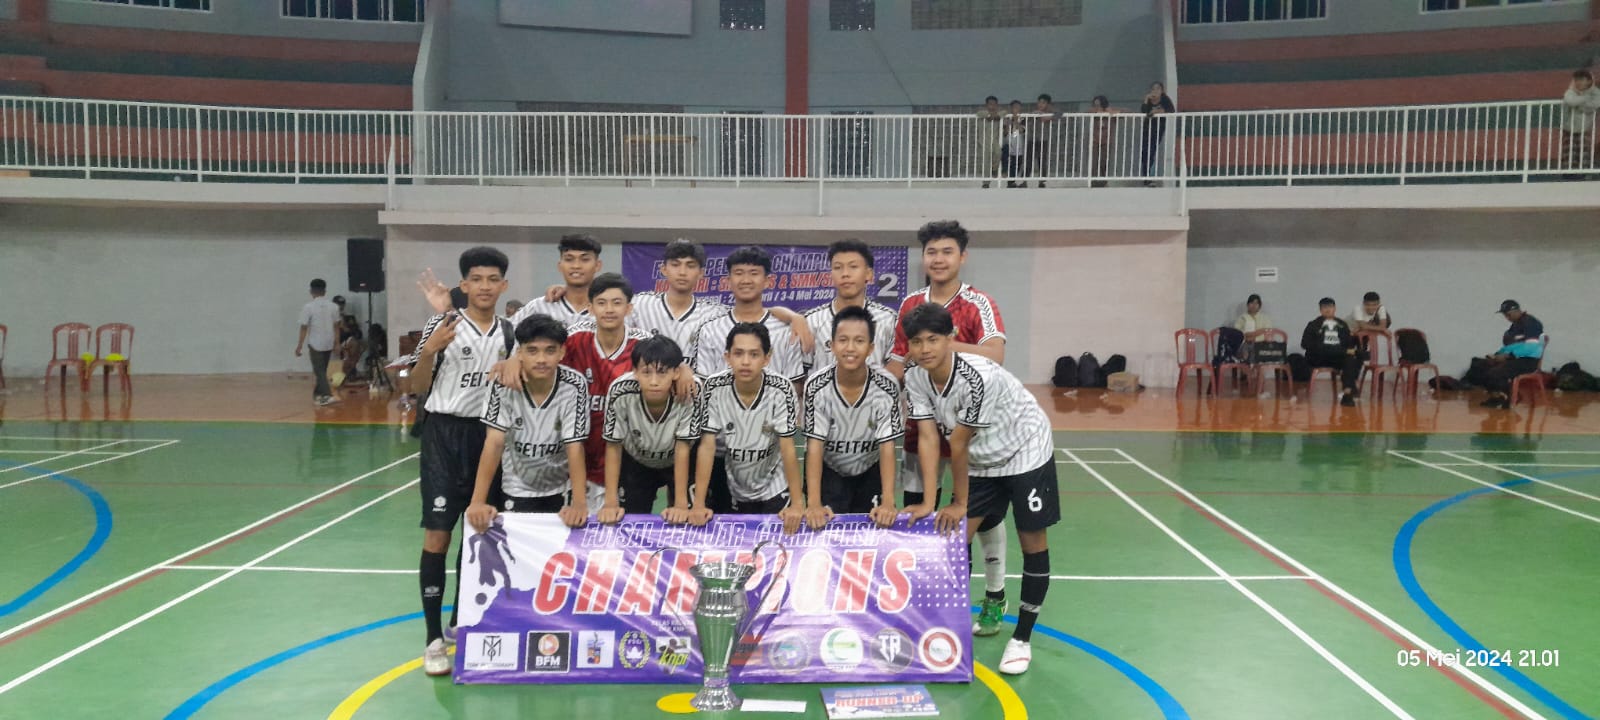 Prestasi Ekstrakulikuler Futsal SMK Pembangunan Bogor